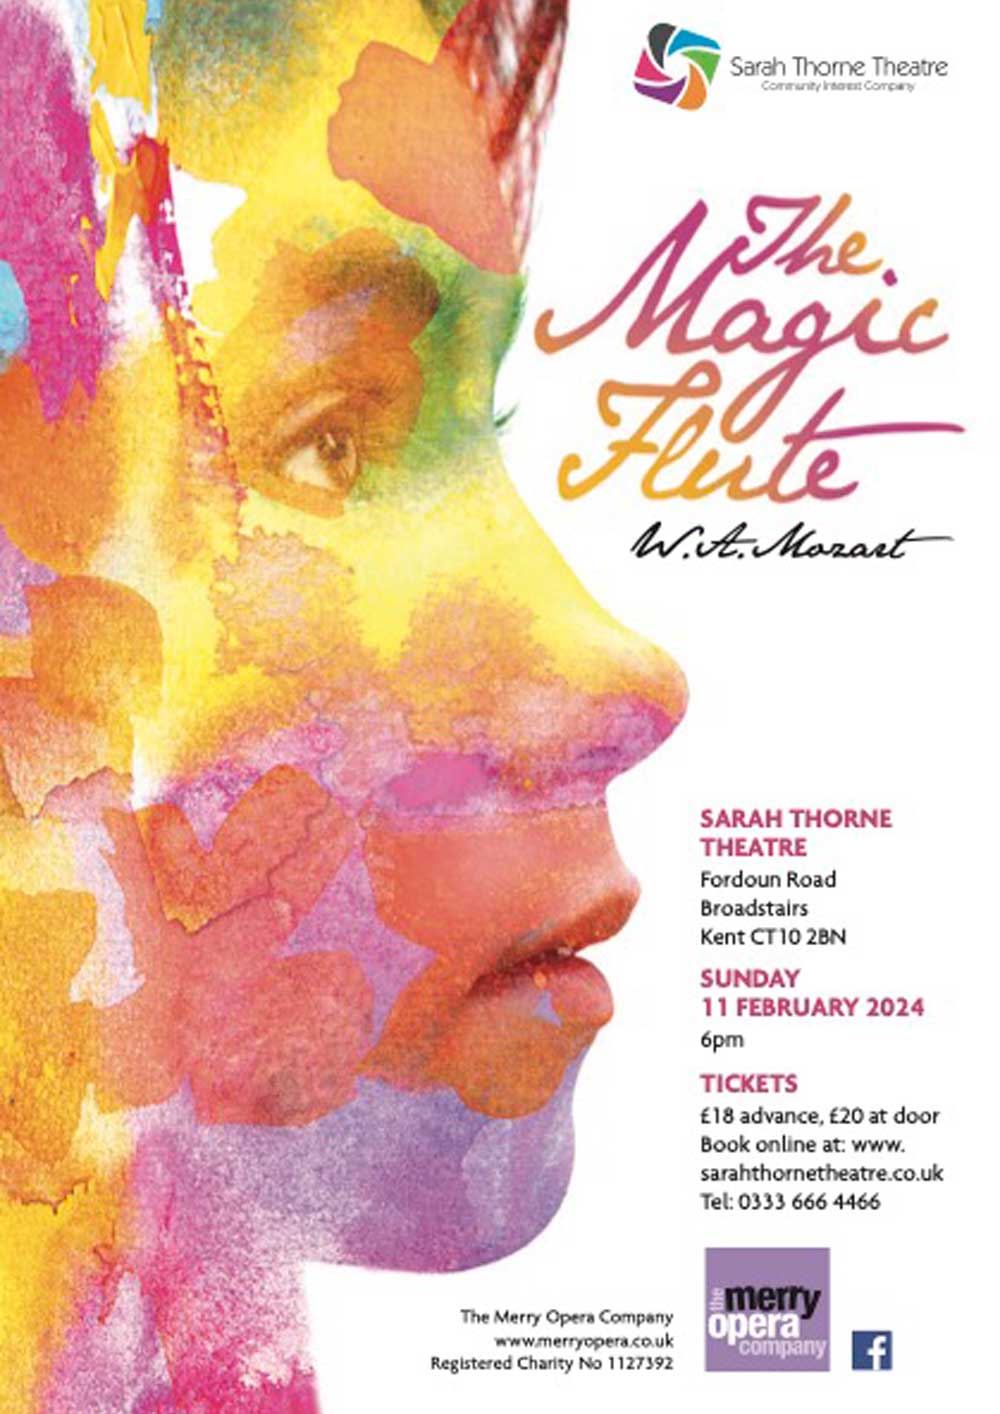 Image of Sarah Thorne Theatre event - Magic Flute